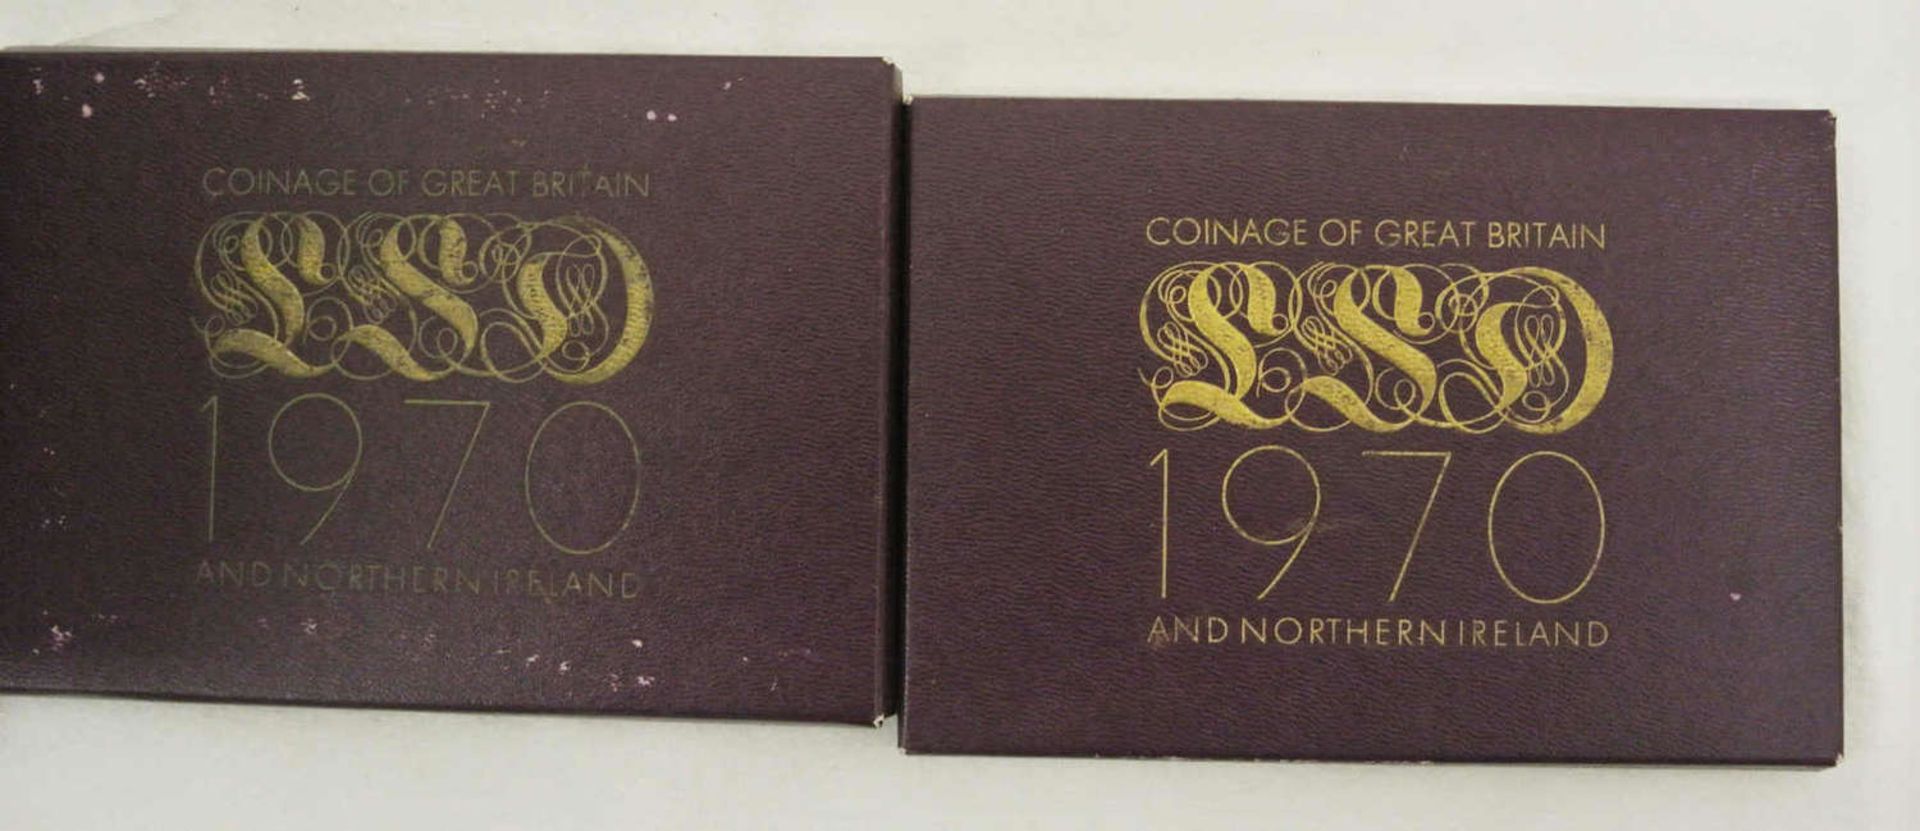 2 Münzsätze von Nordirland und England von 1970 im Original Blister 2 coin sets from Northern